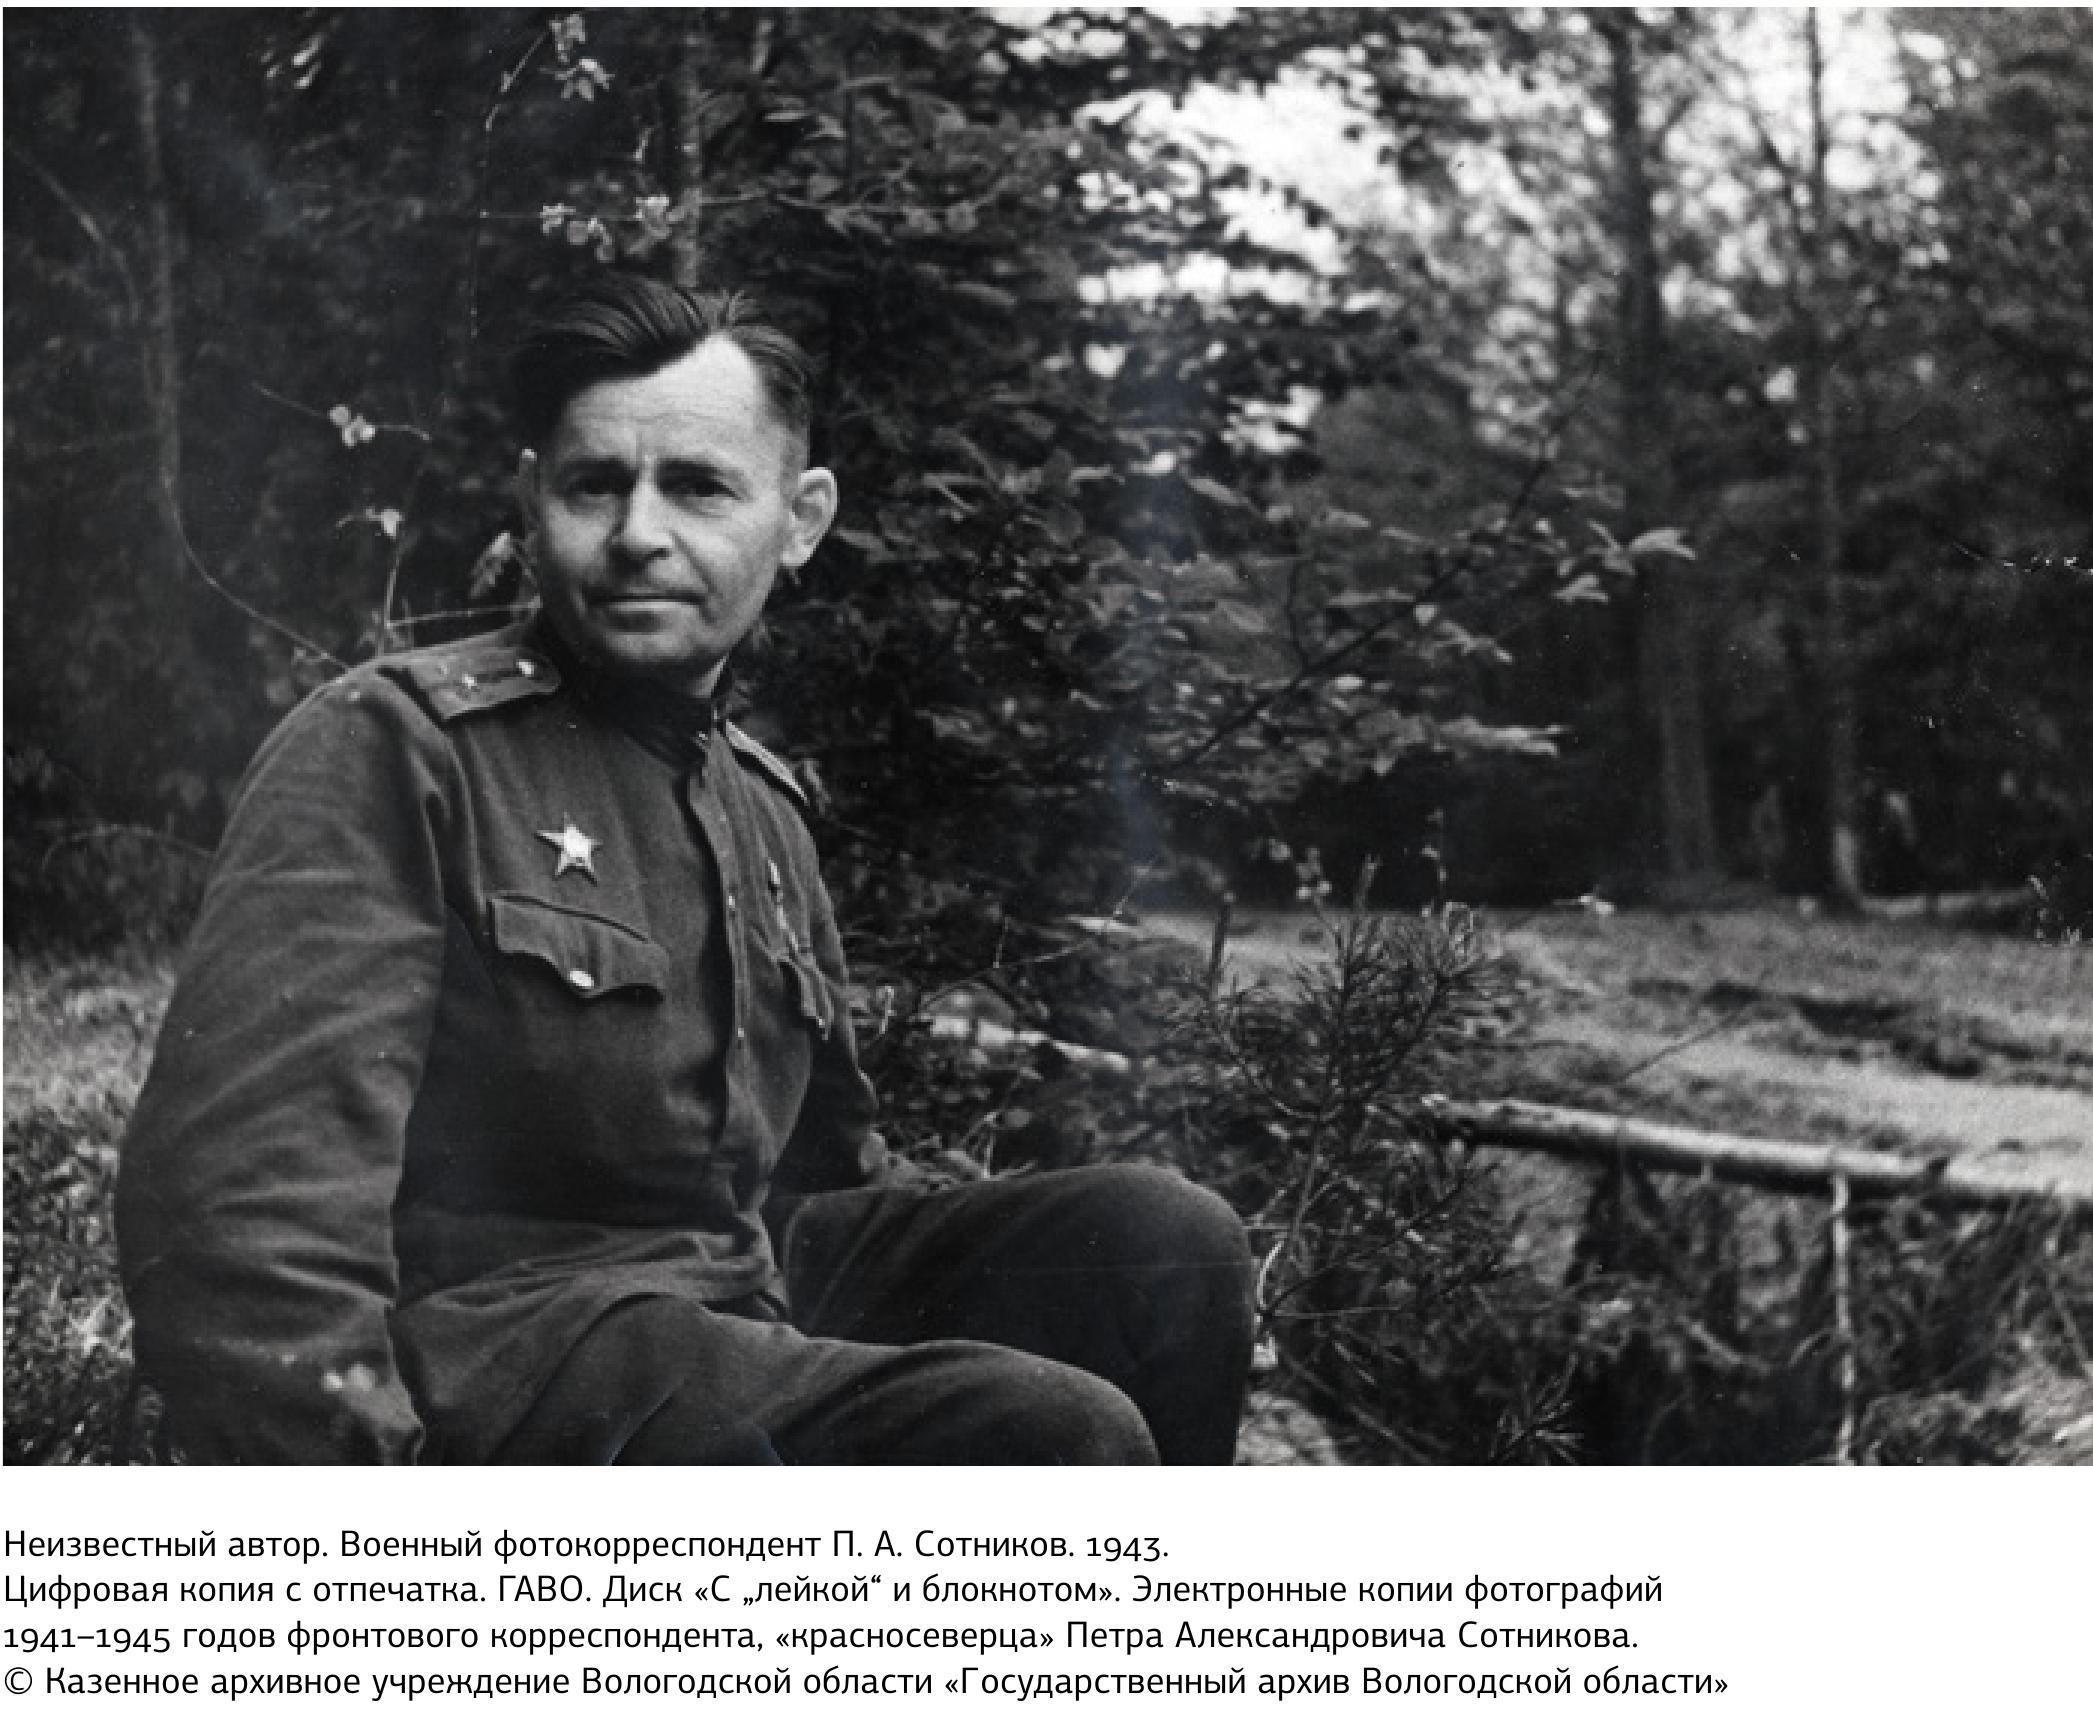 Военный фотокорреспондент Борис Вдовенко 1945